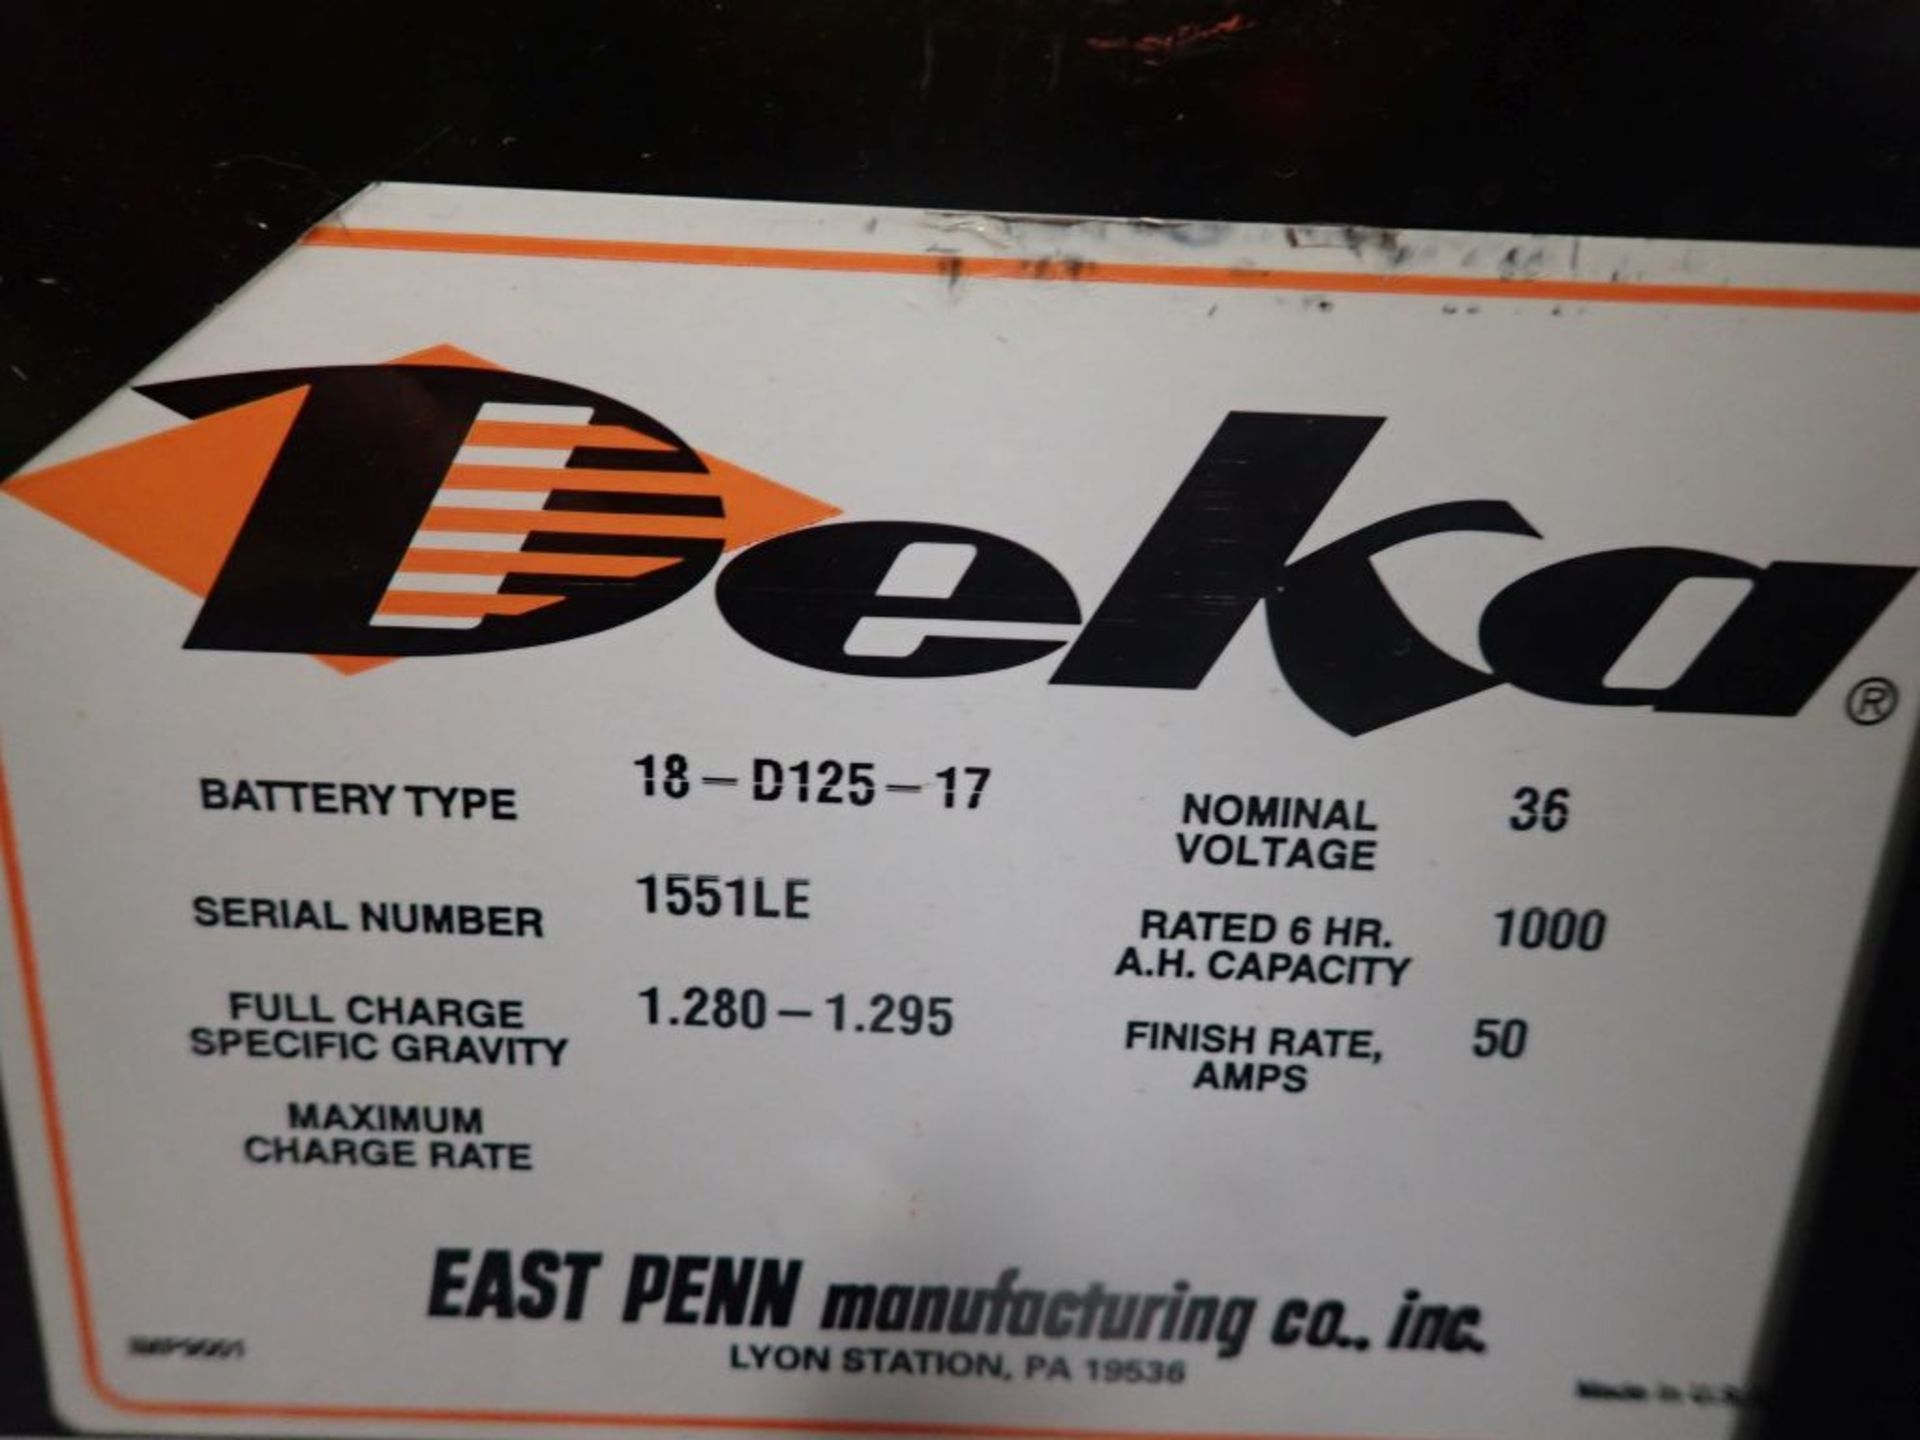 Deka 36V Forklift Battery - 36V; Type 18-D125-17; Tag: 221257; Lot Loading Fee: $30 - Image 3 of 4